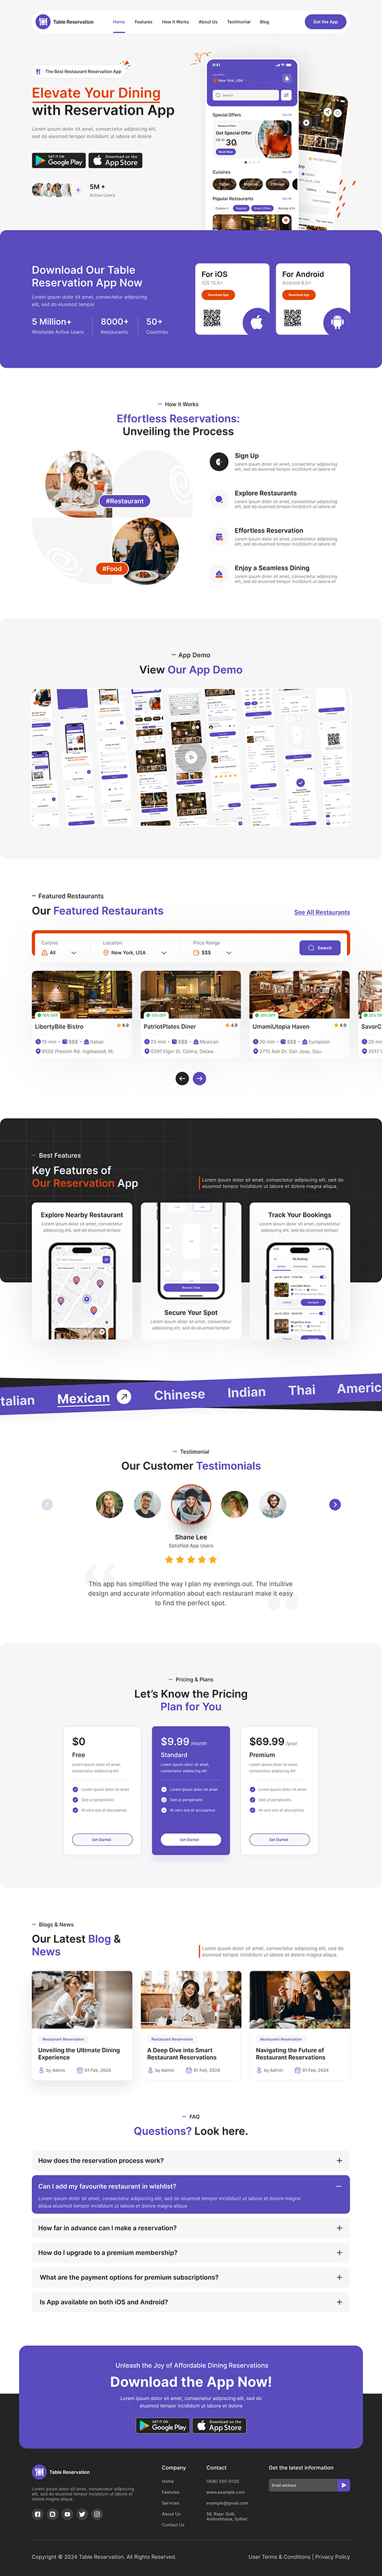 Restaurant Table Reservation App Landing Page UI Design